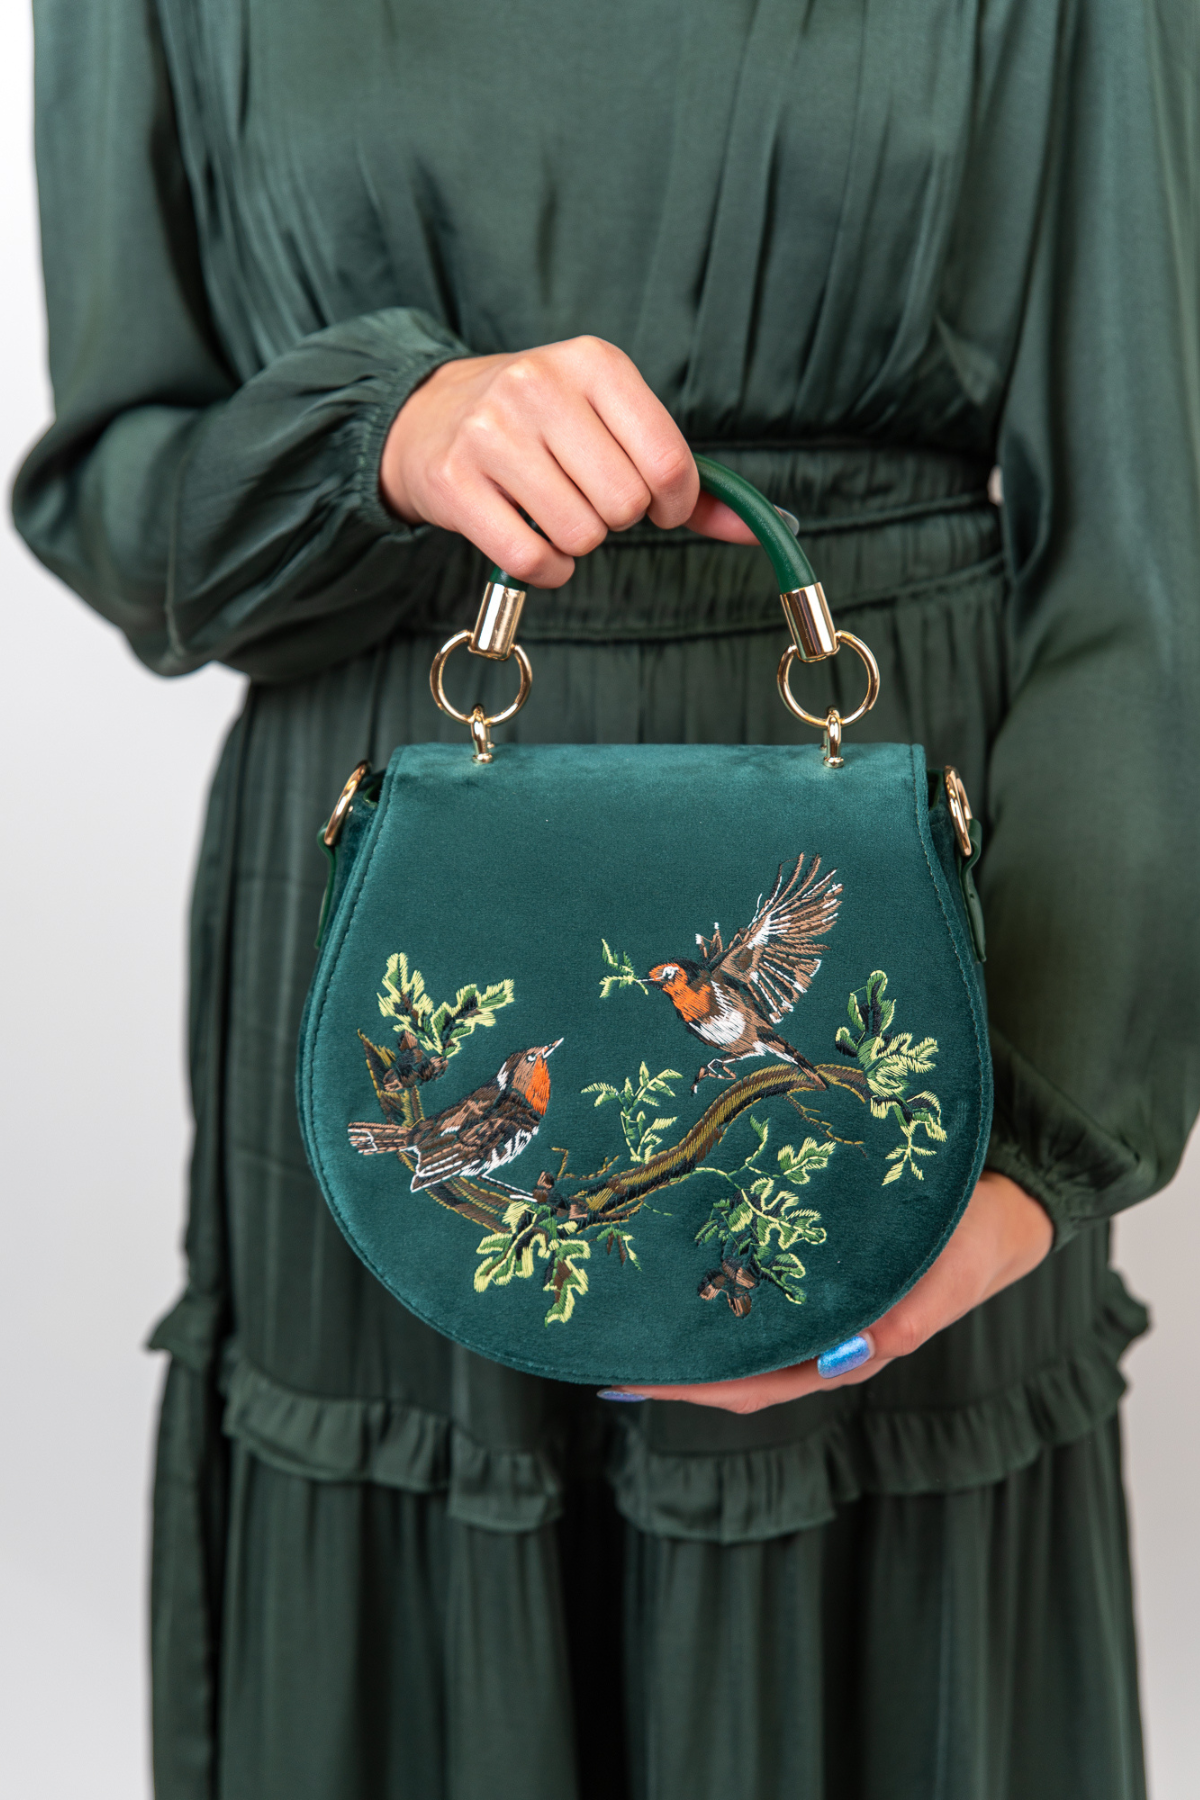 Robin Green Velvet Handbag